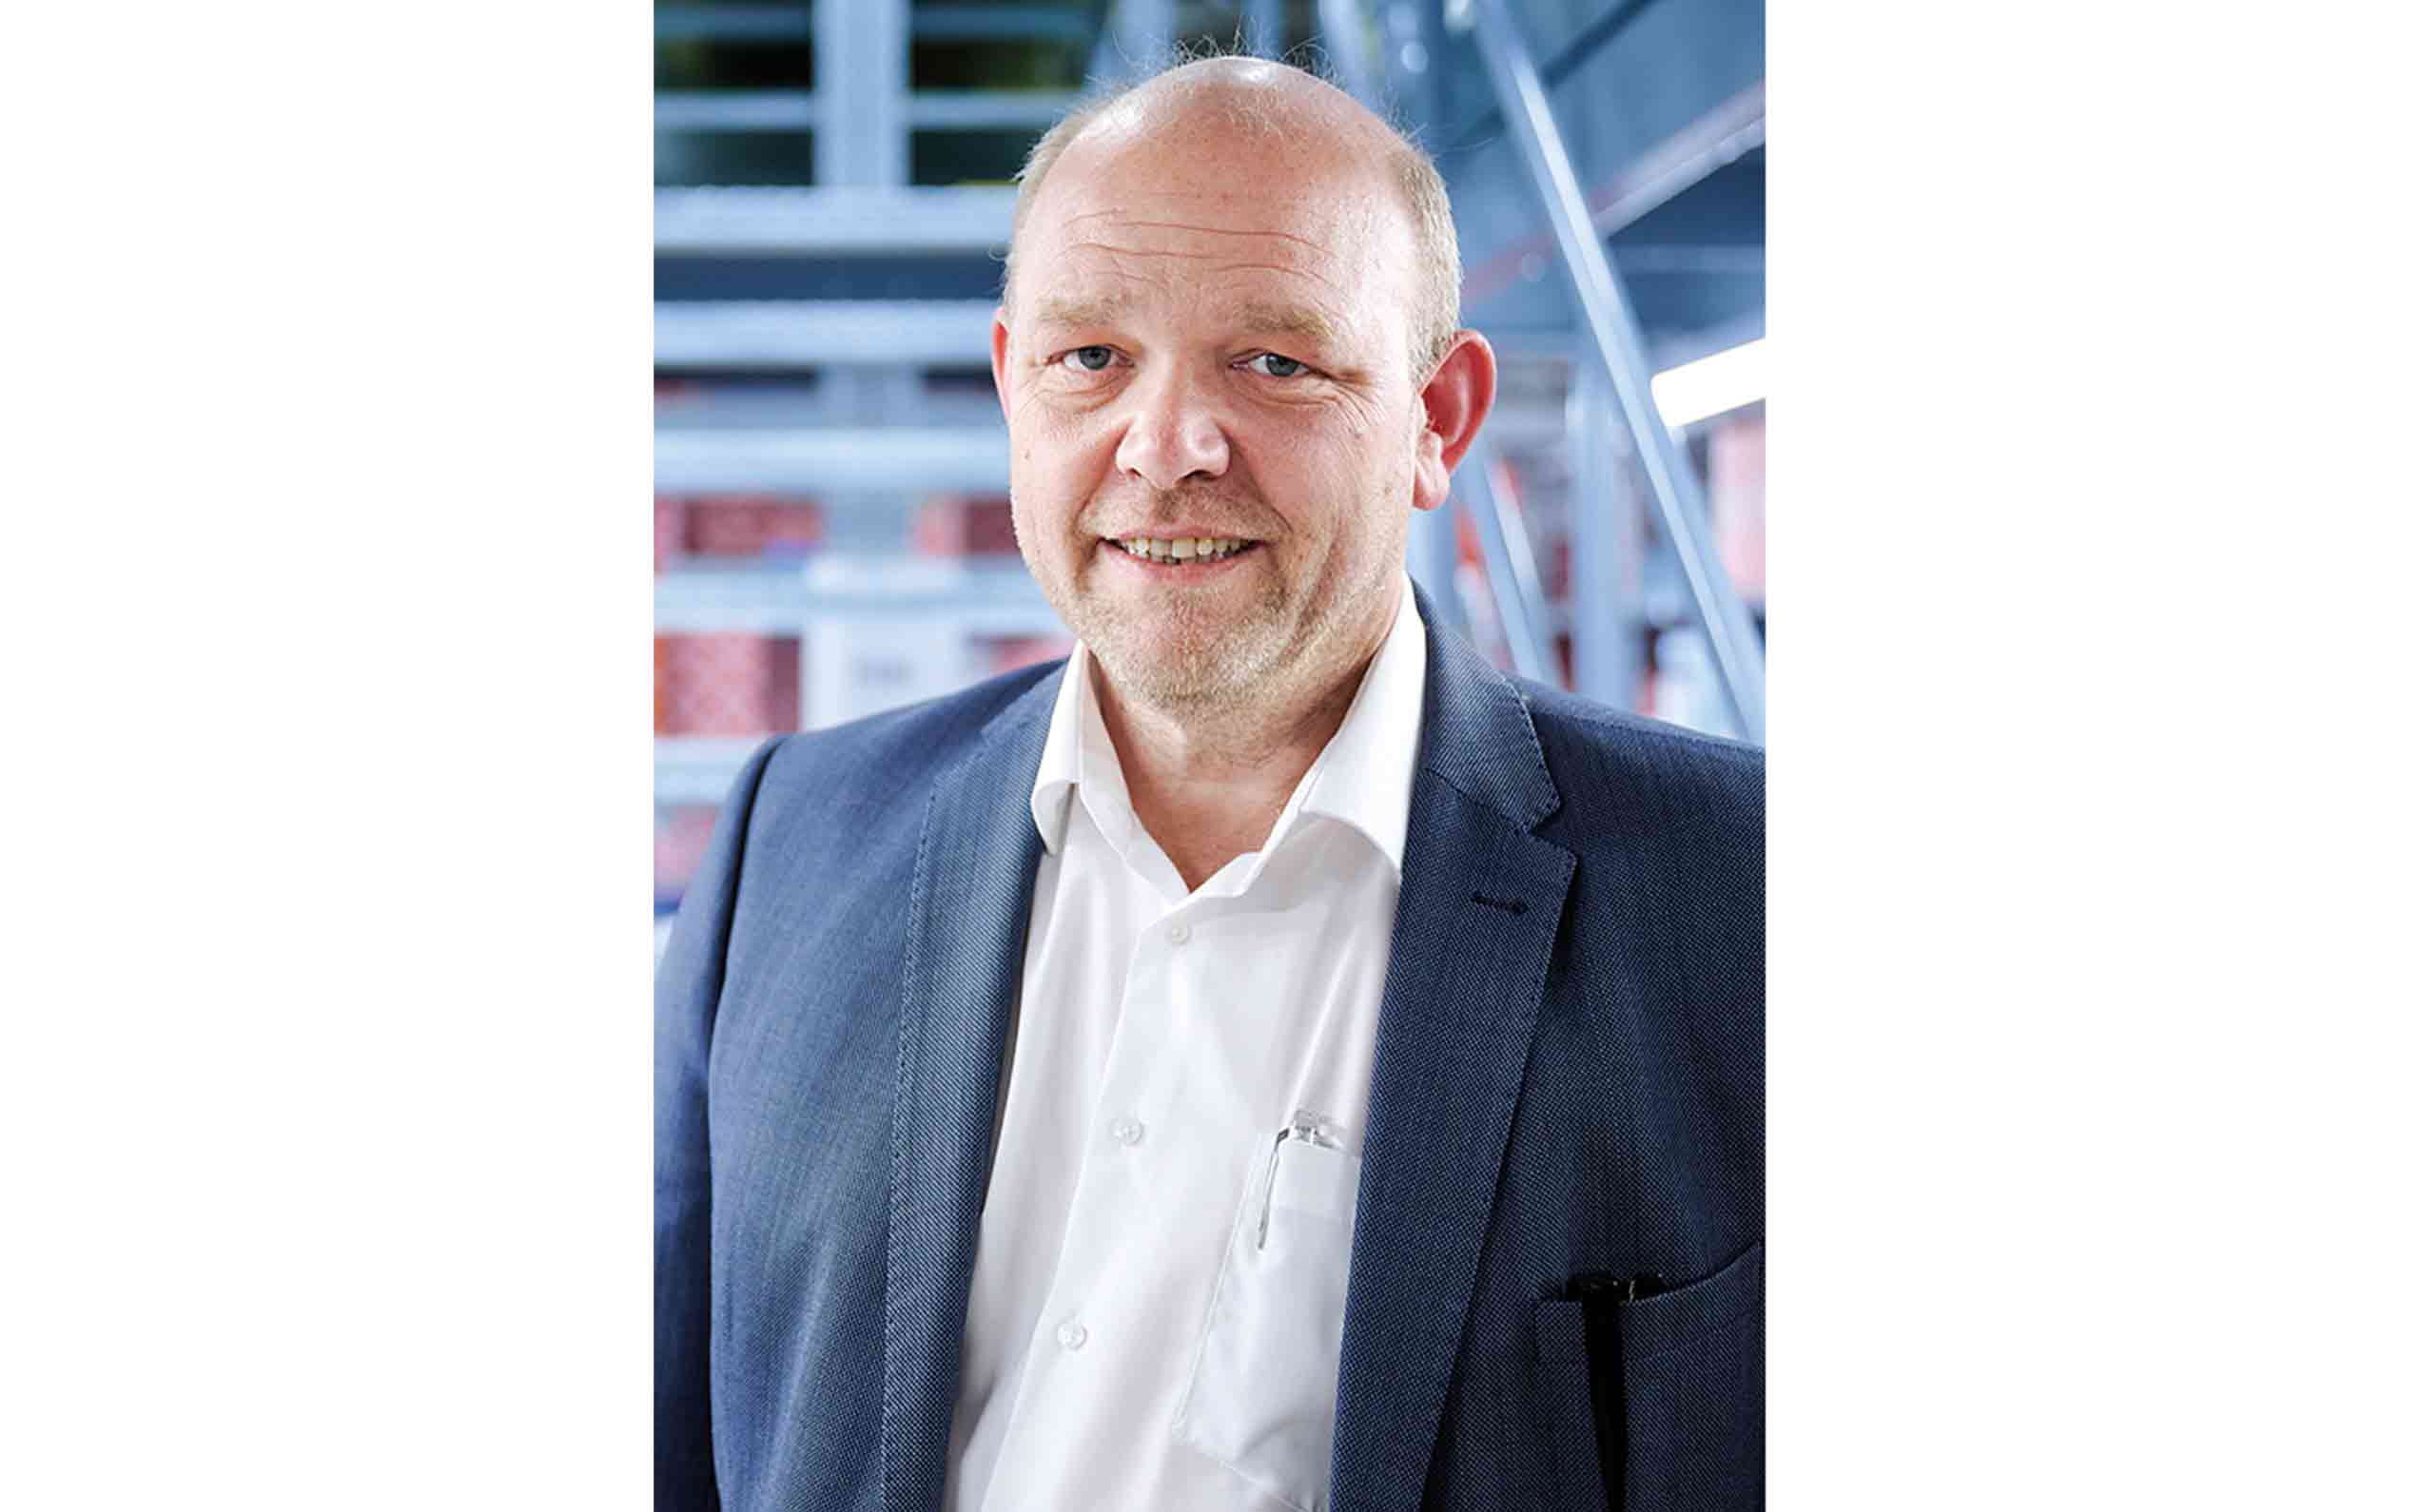 Wittich-Geschäftsführer Thorsten Rahn will den Kfz-Werkstätten mit der neuen Motorenabteilung Kompetenzen und Lieferketten erhalten